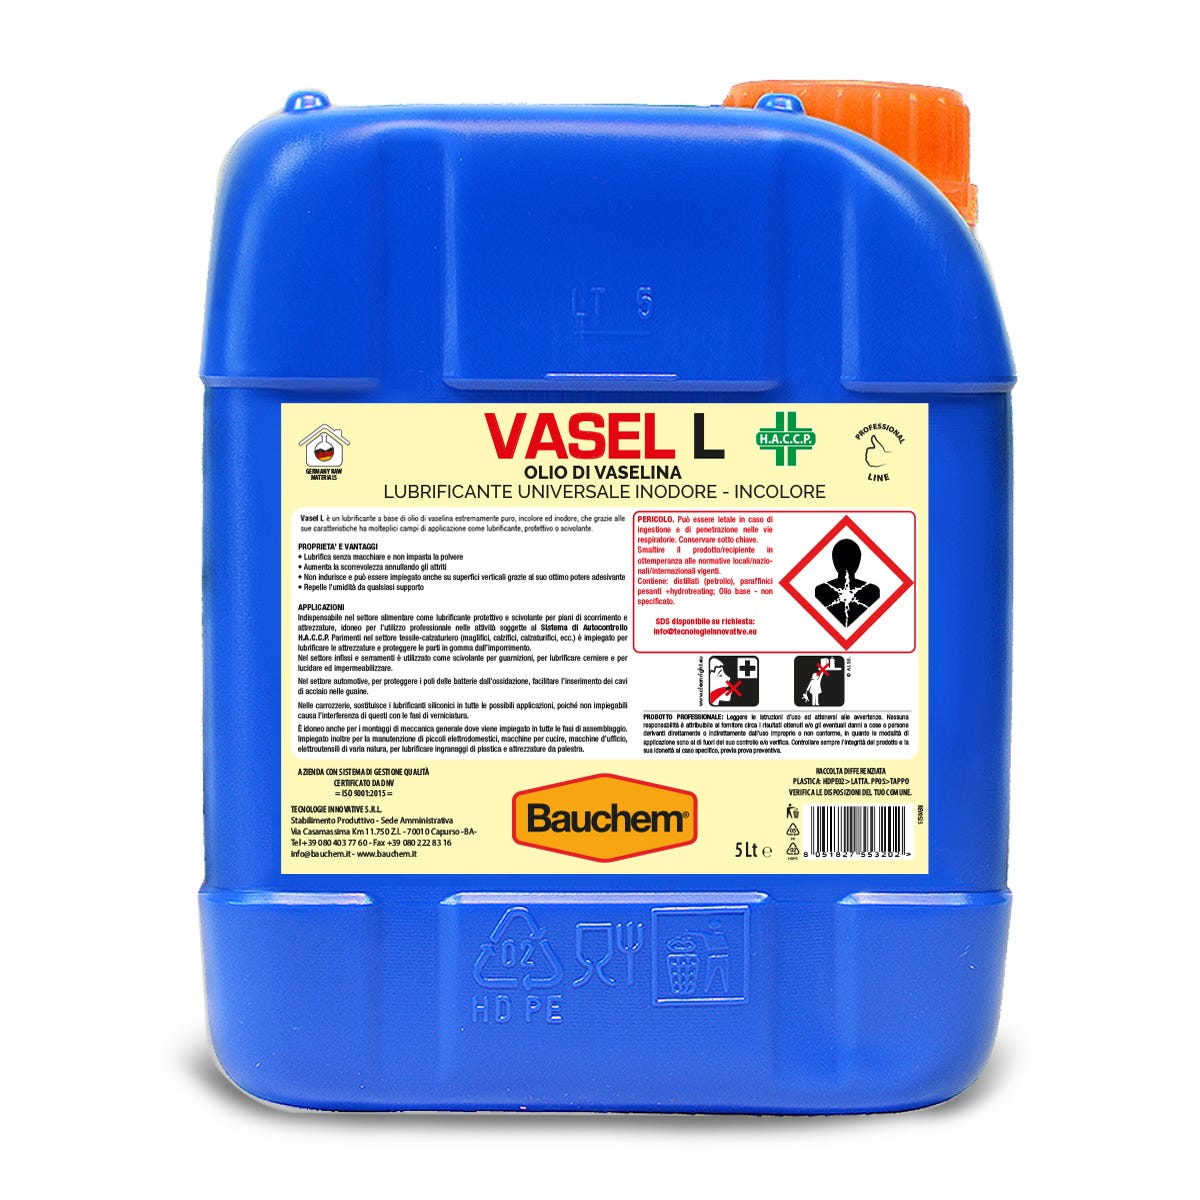 BAUCHEM Vasel L Olio di Vaselina Lubrificante Universale Inodore e Incolore  5 L